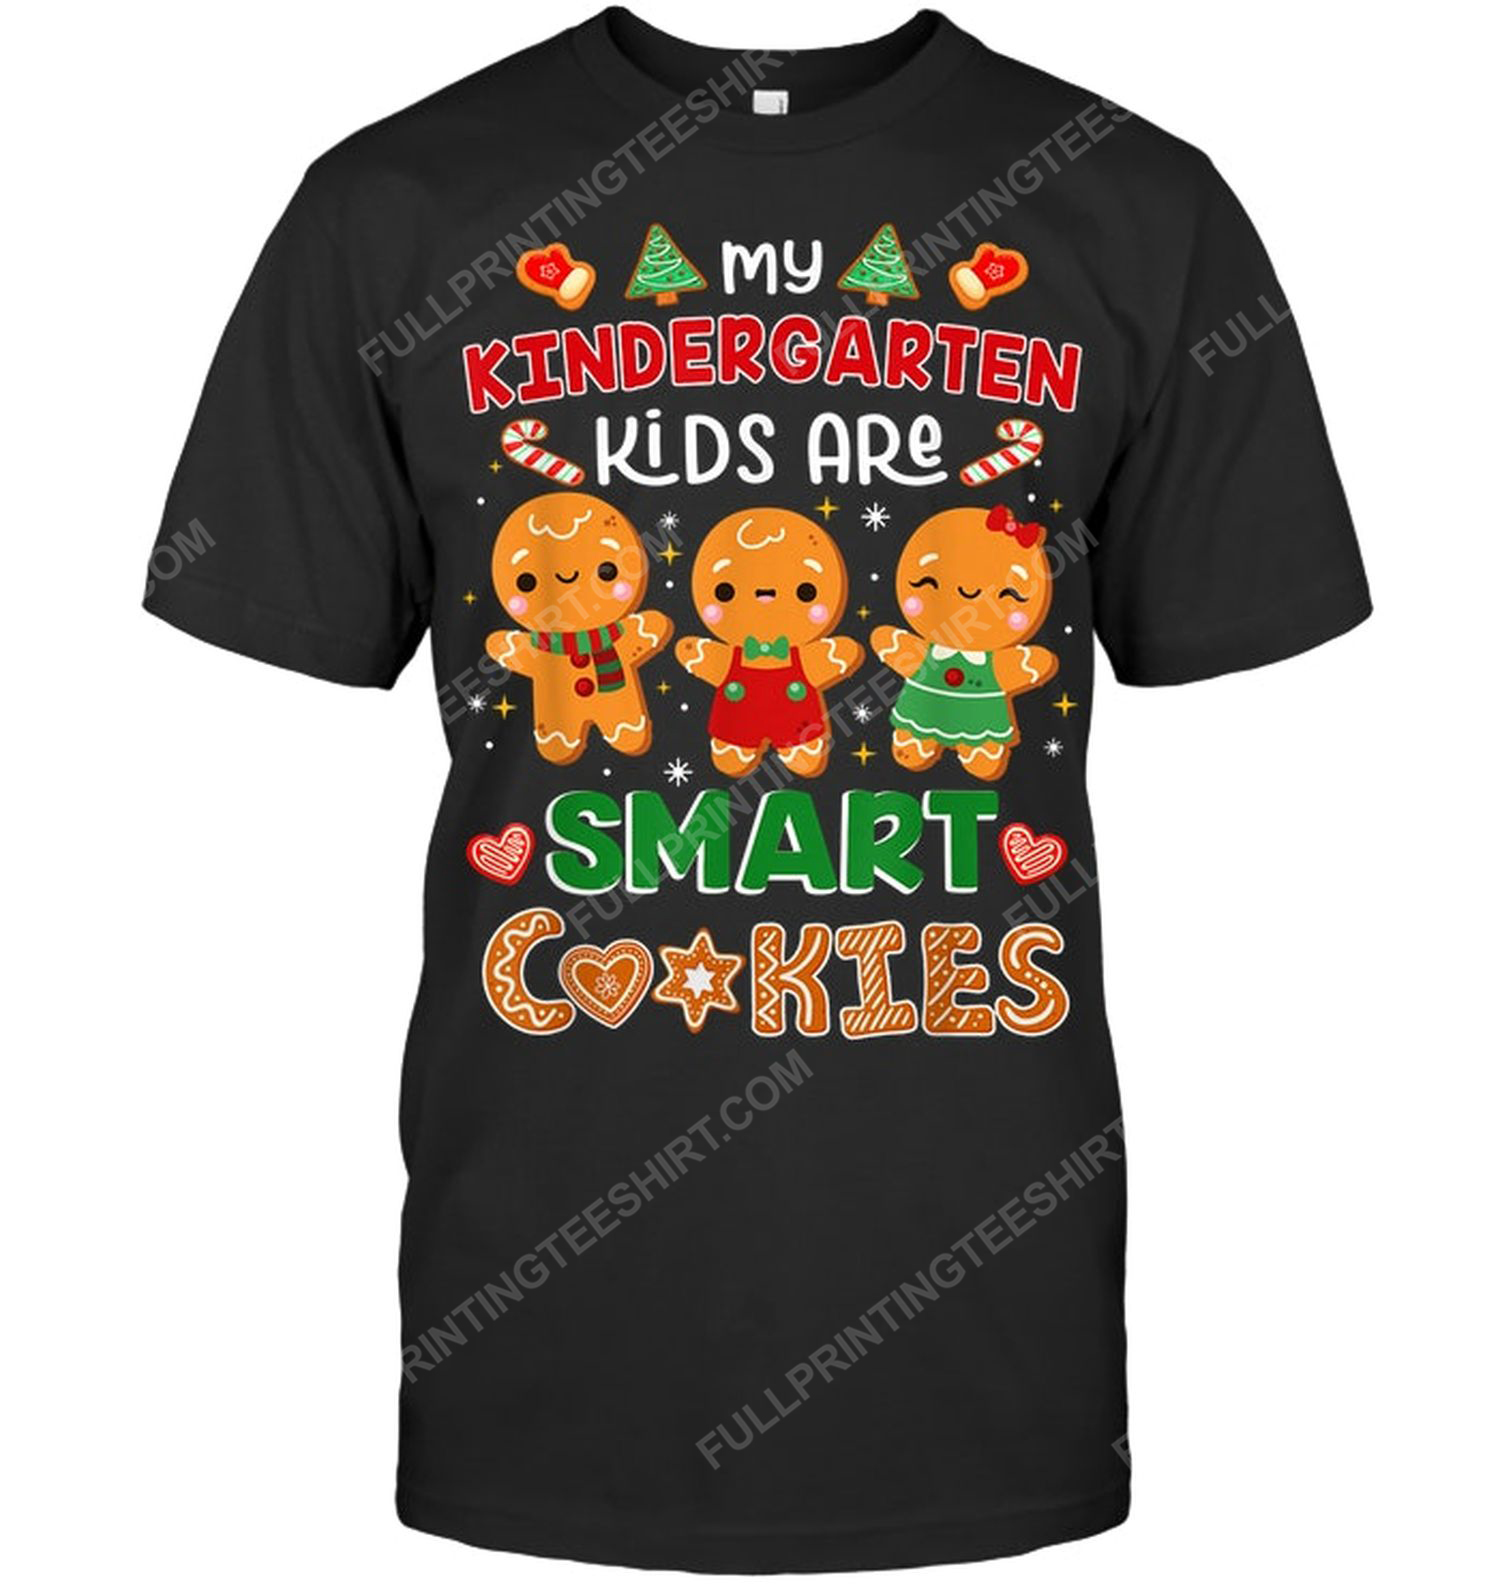 My kindergarten kids are smart cookies tshirt